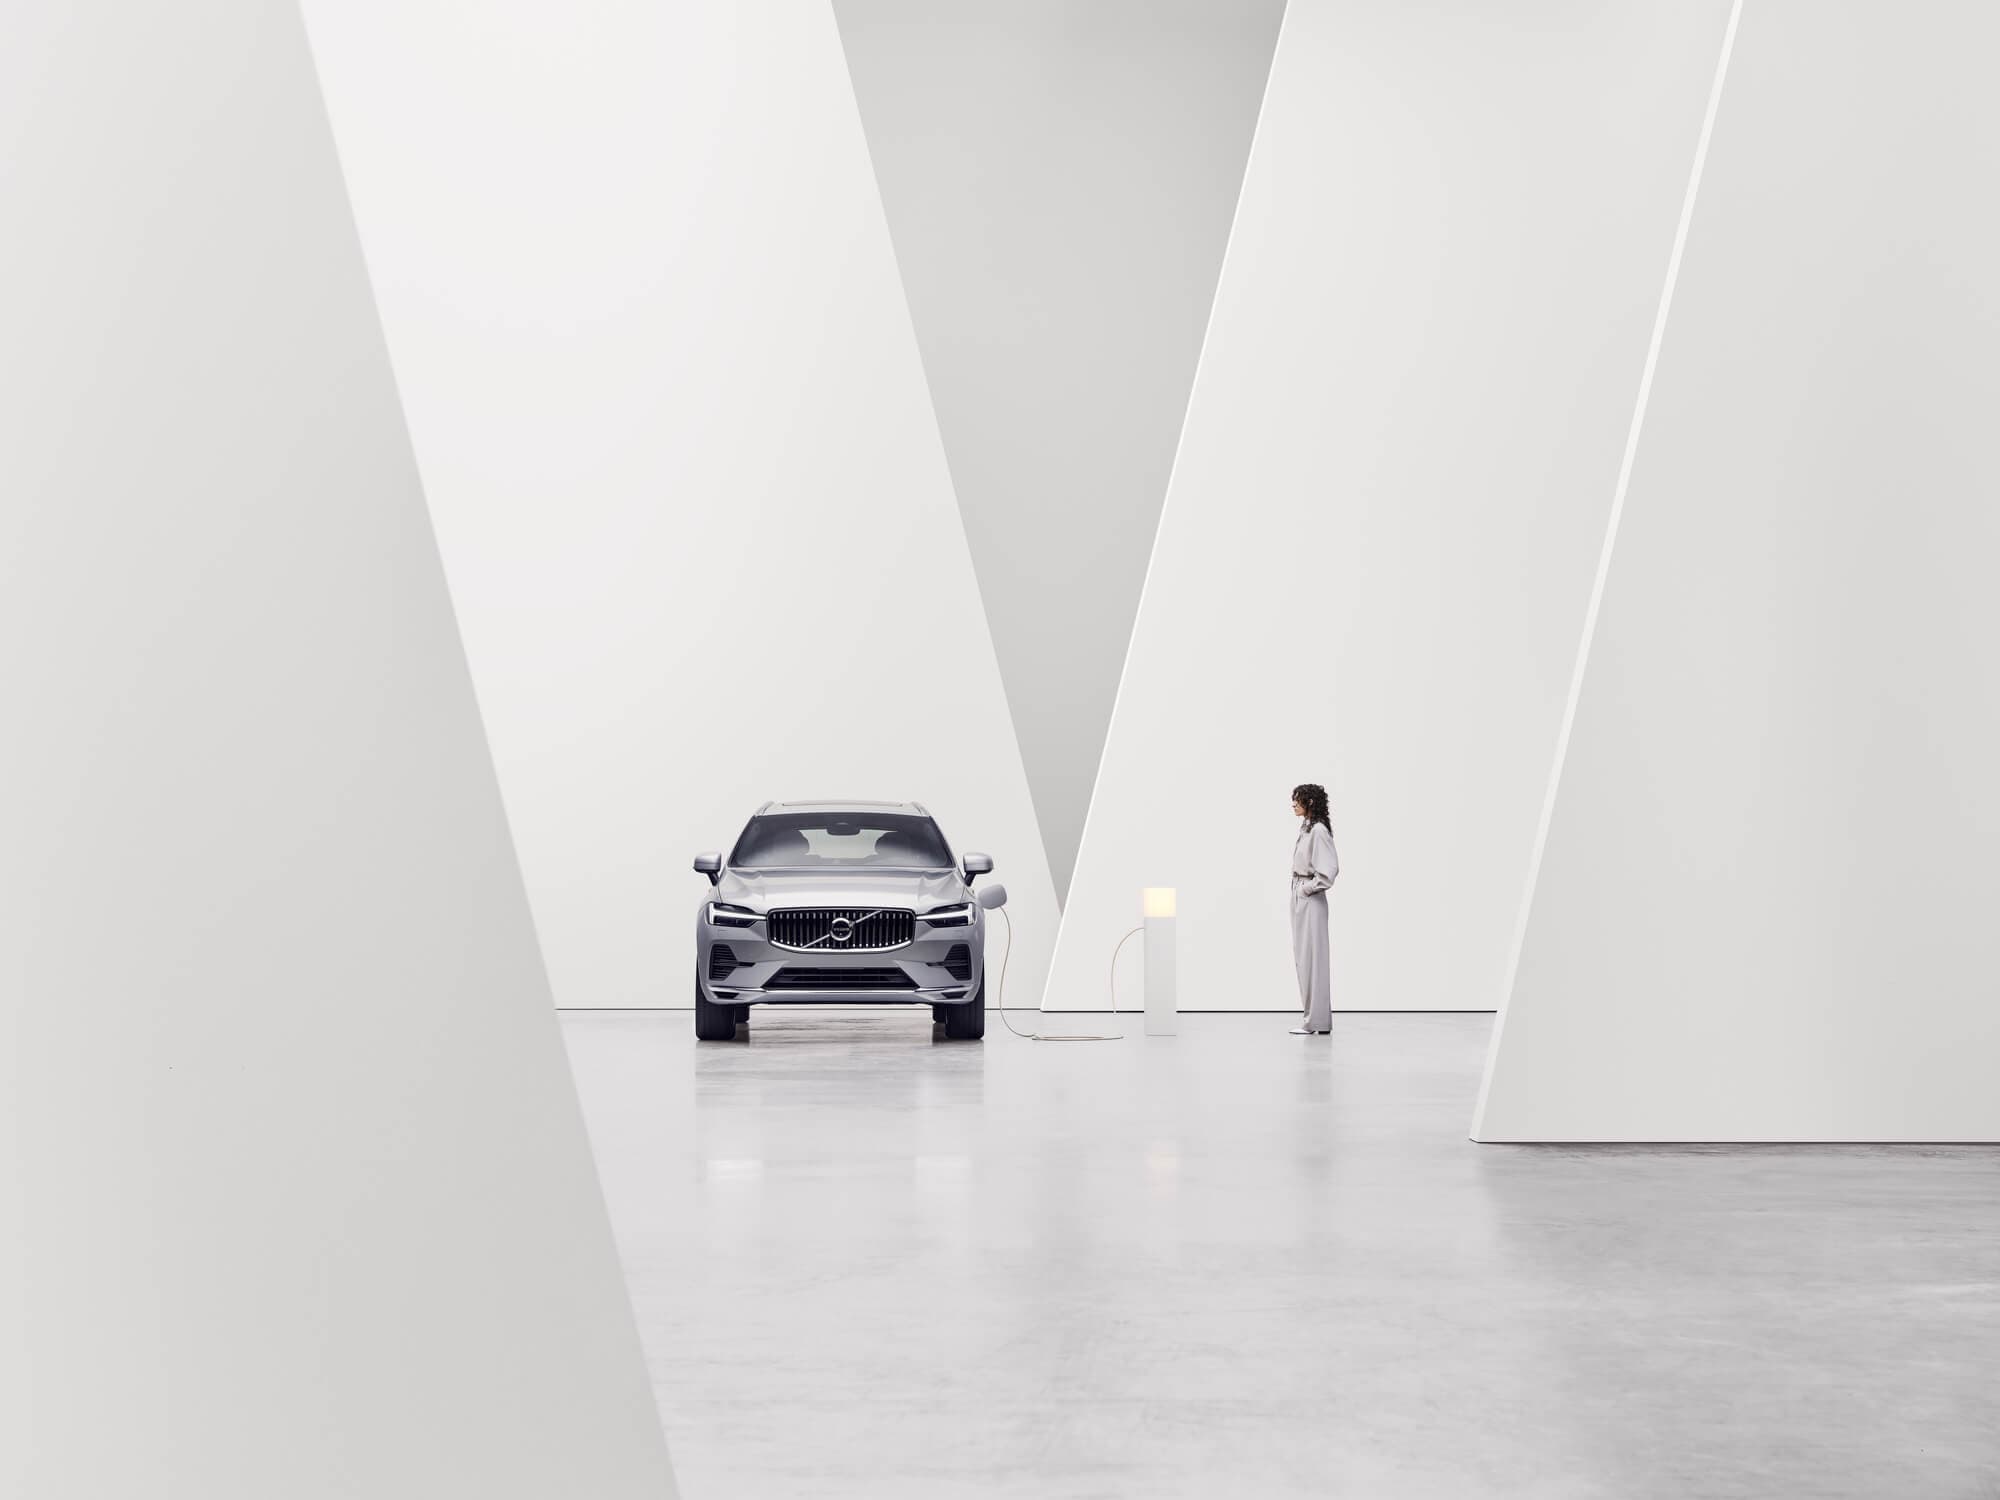 Widziane z przodu samochodu Volvo w białym pomieszczeniu, obok stanowiska ładowania